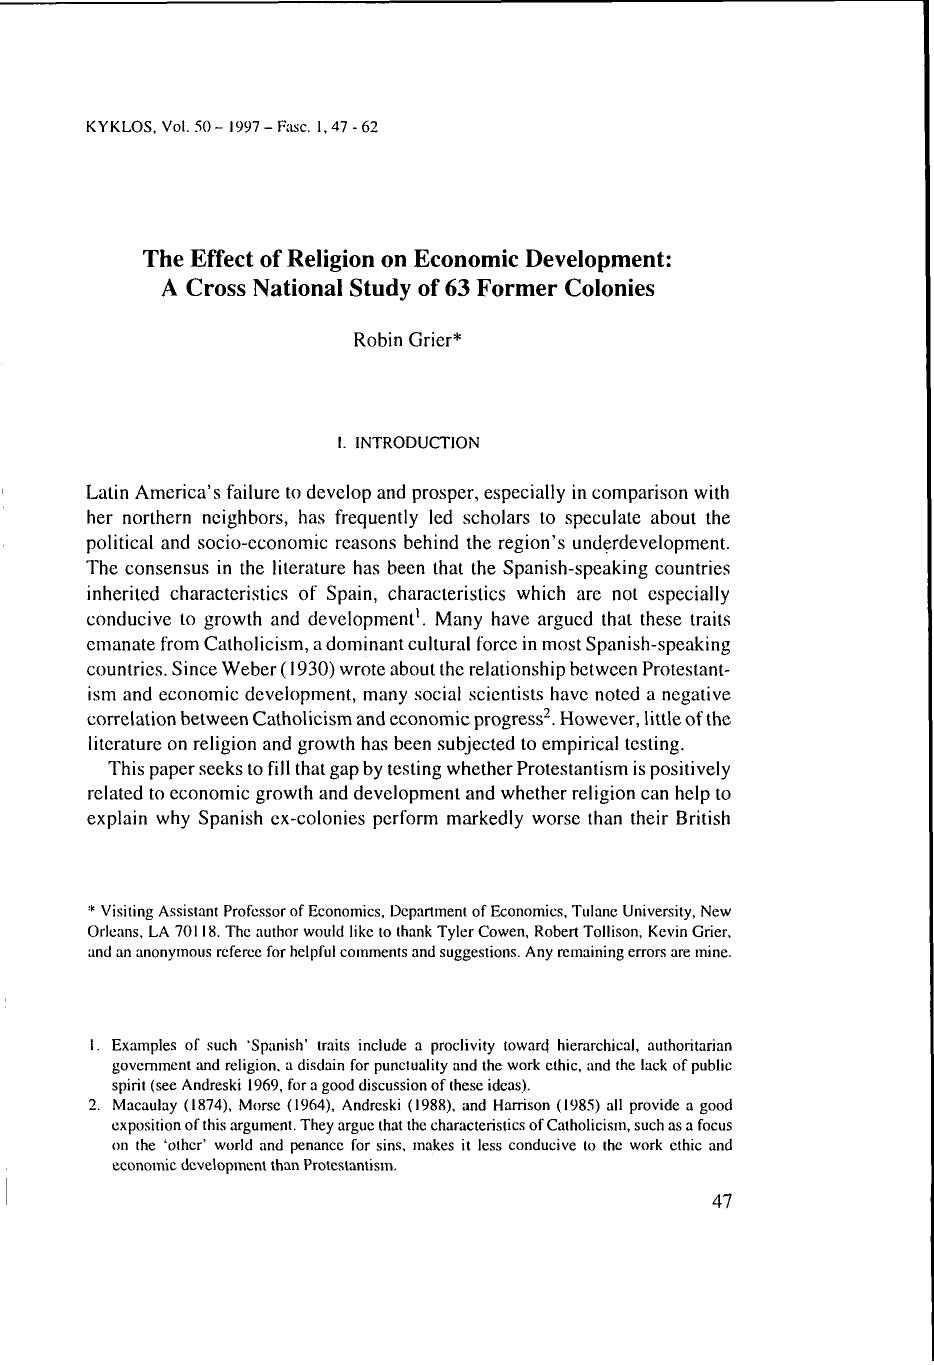 The Effect of Religion on Economic Development